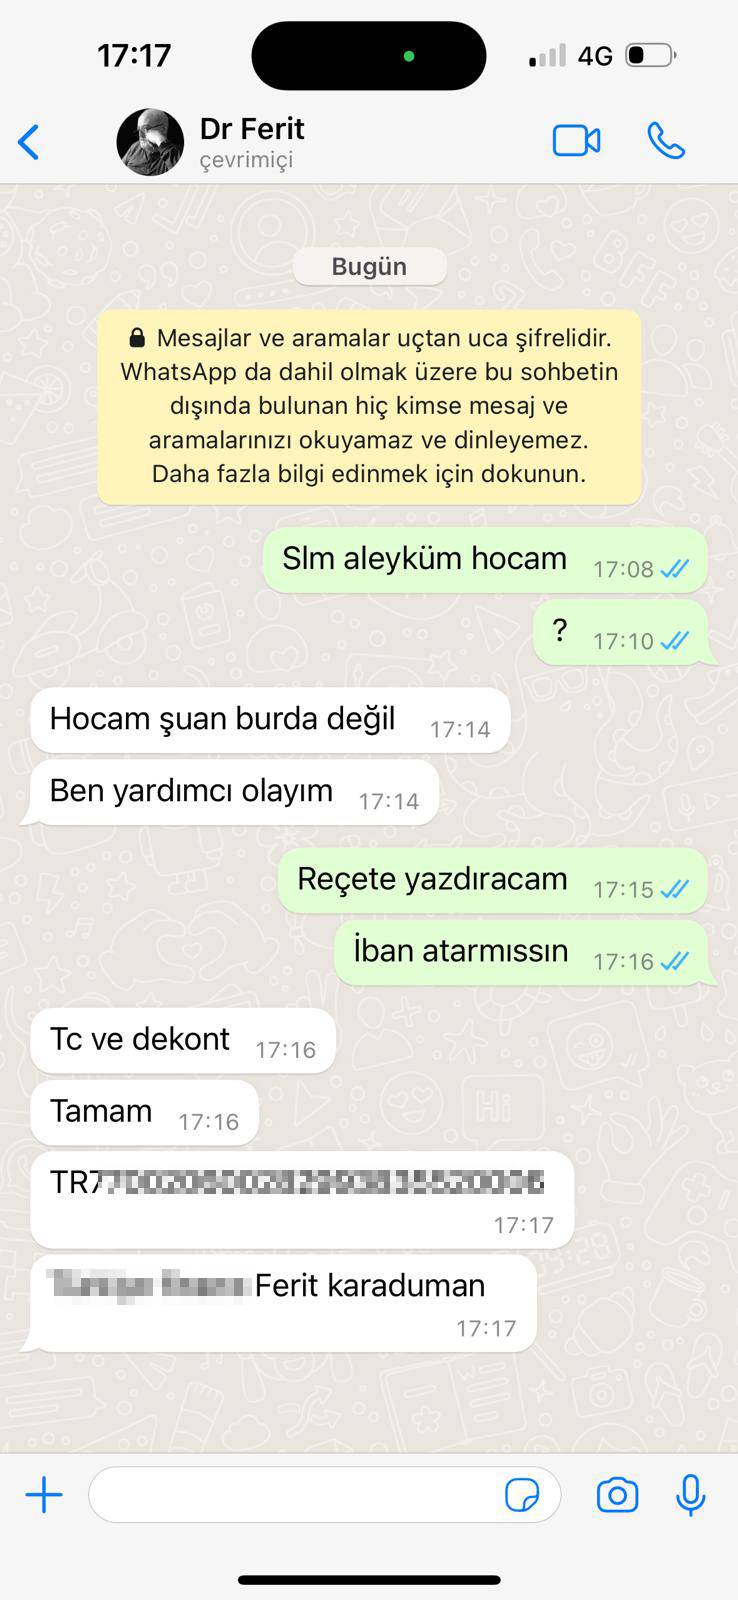 Konya’da doktorun reçeteli uyuşturucu ticareti iddiasında WhatsApp konuşmaları çıktı 8